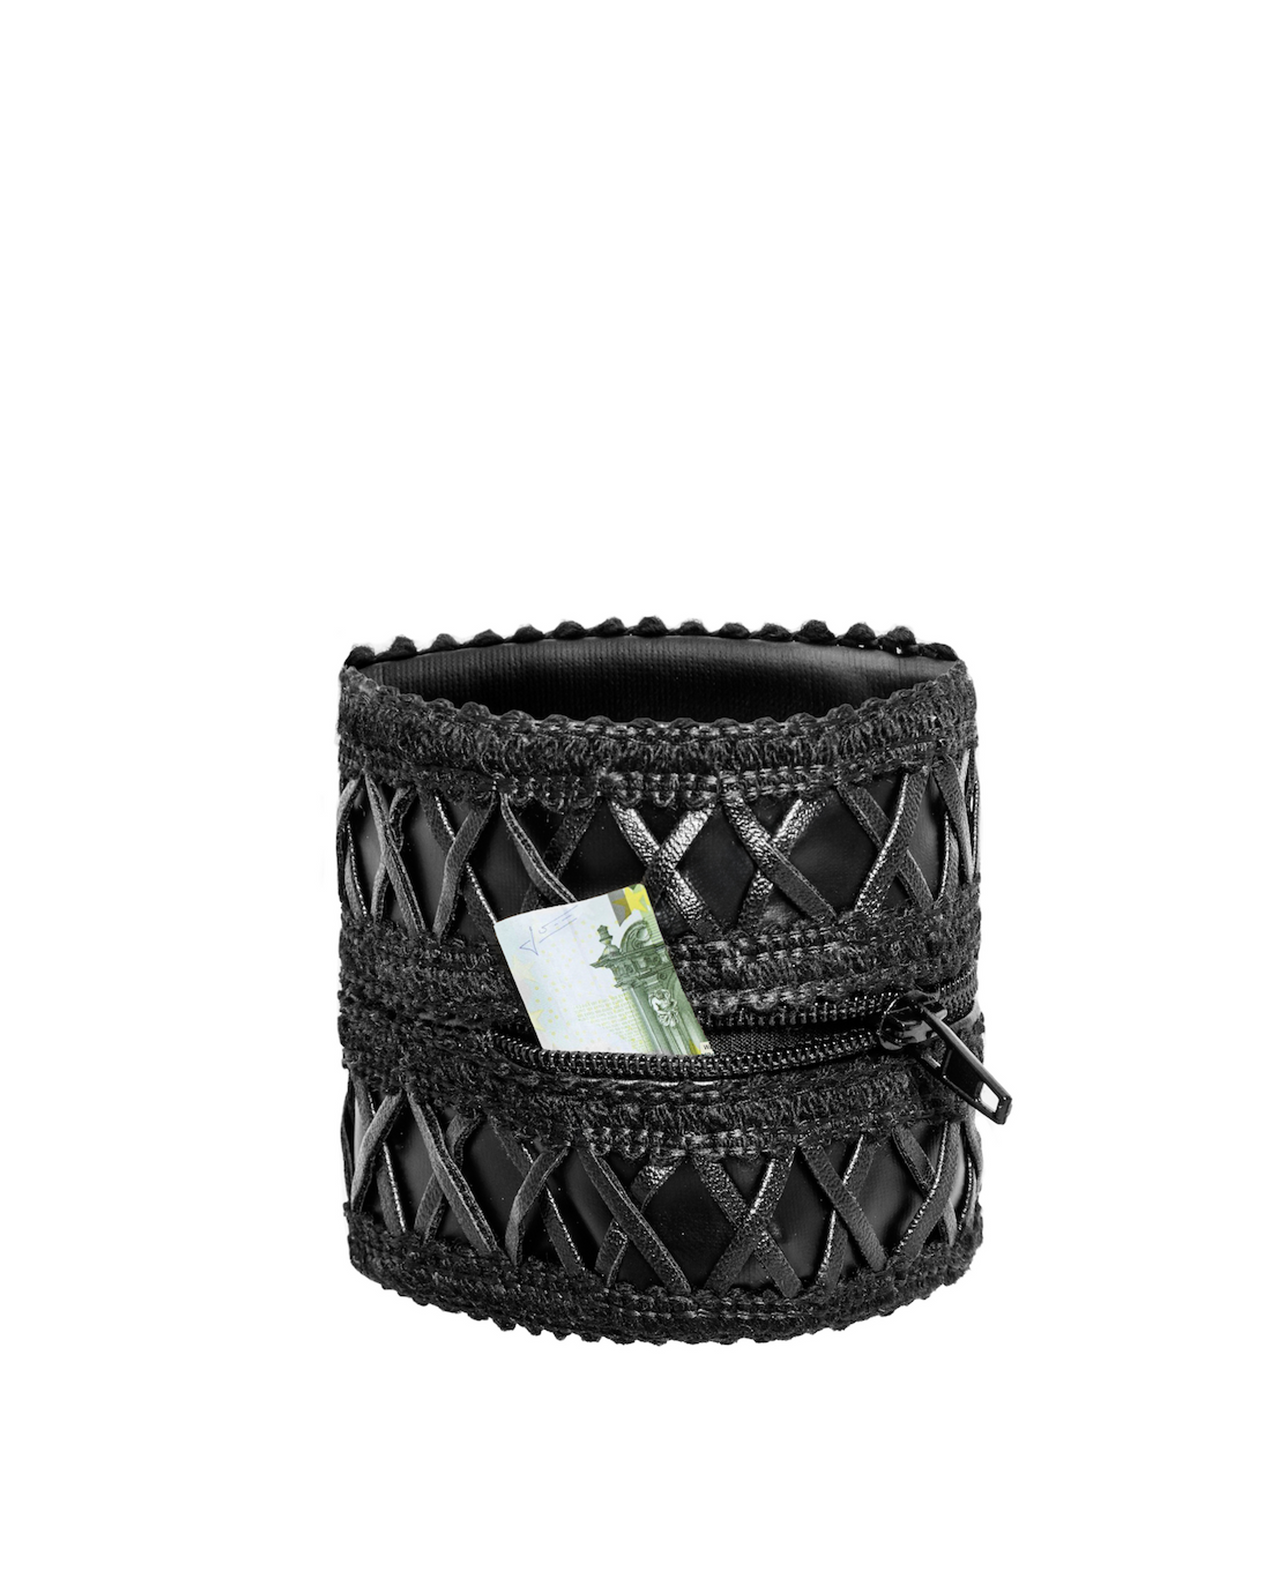 Hidden Zipper Wrist Wallet